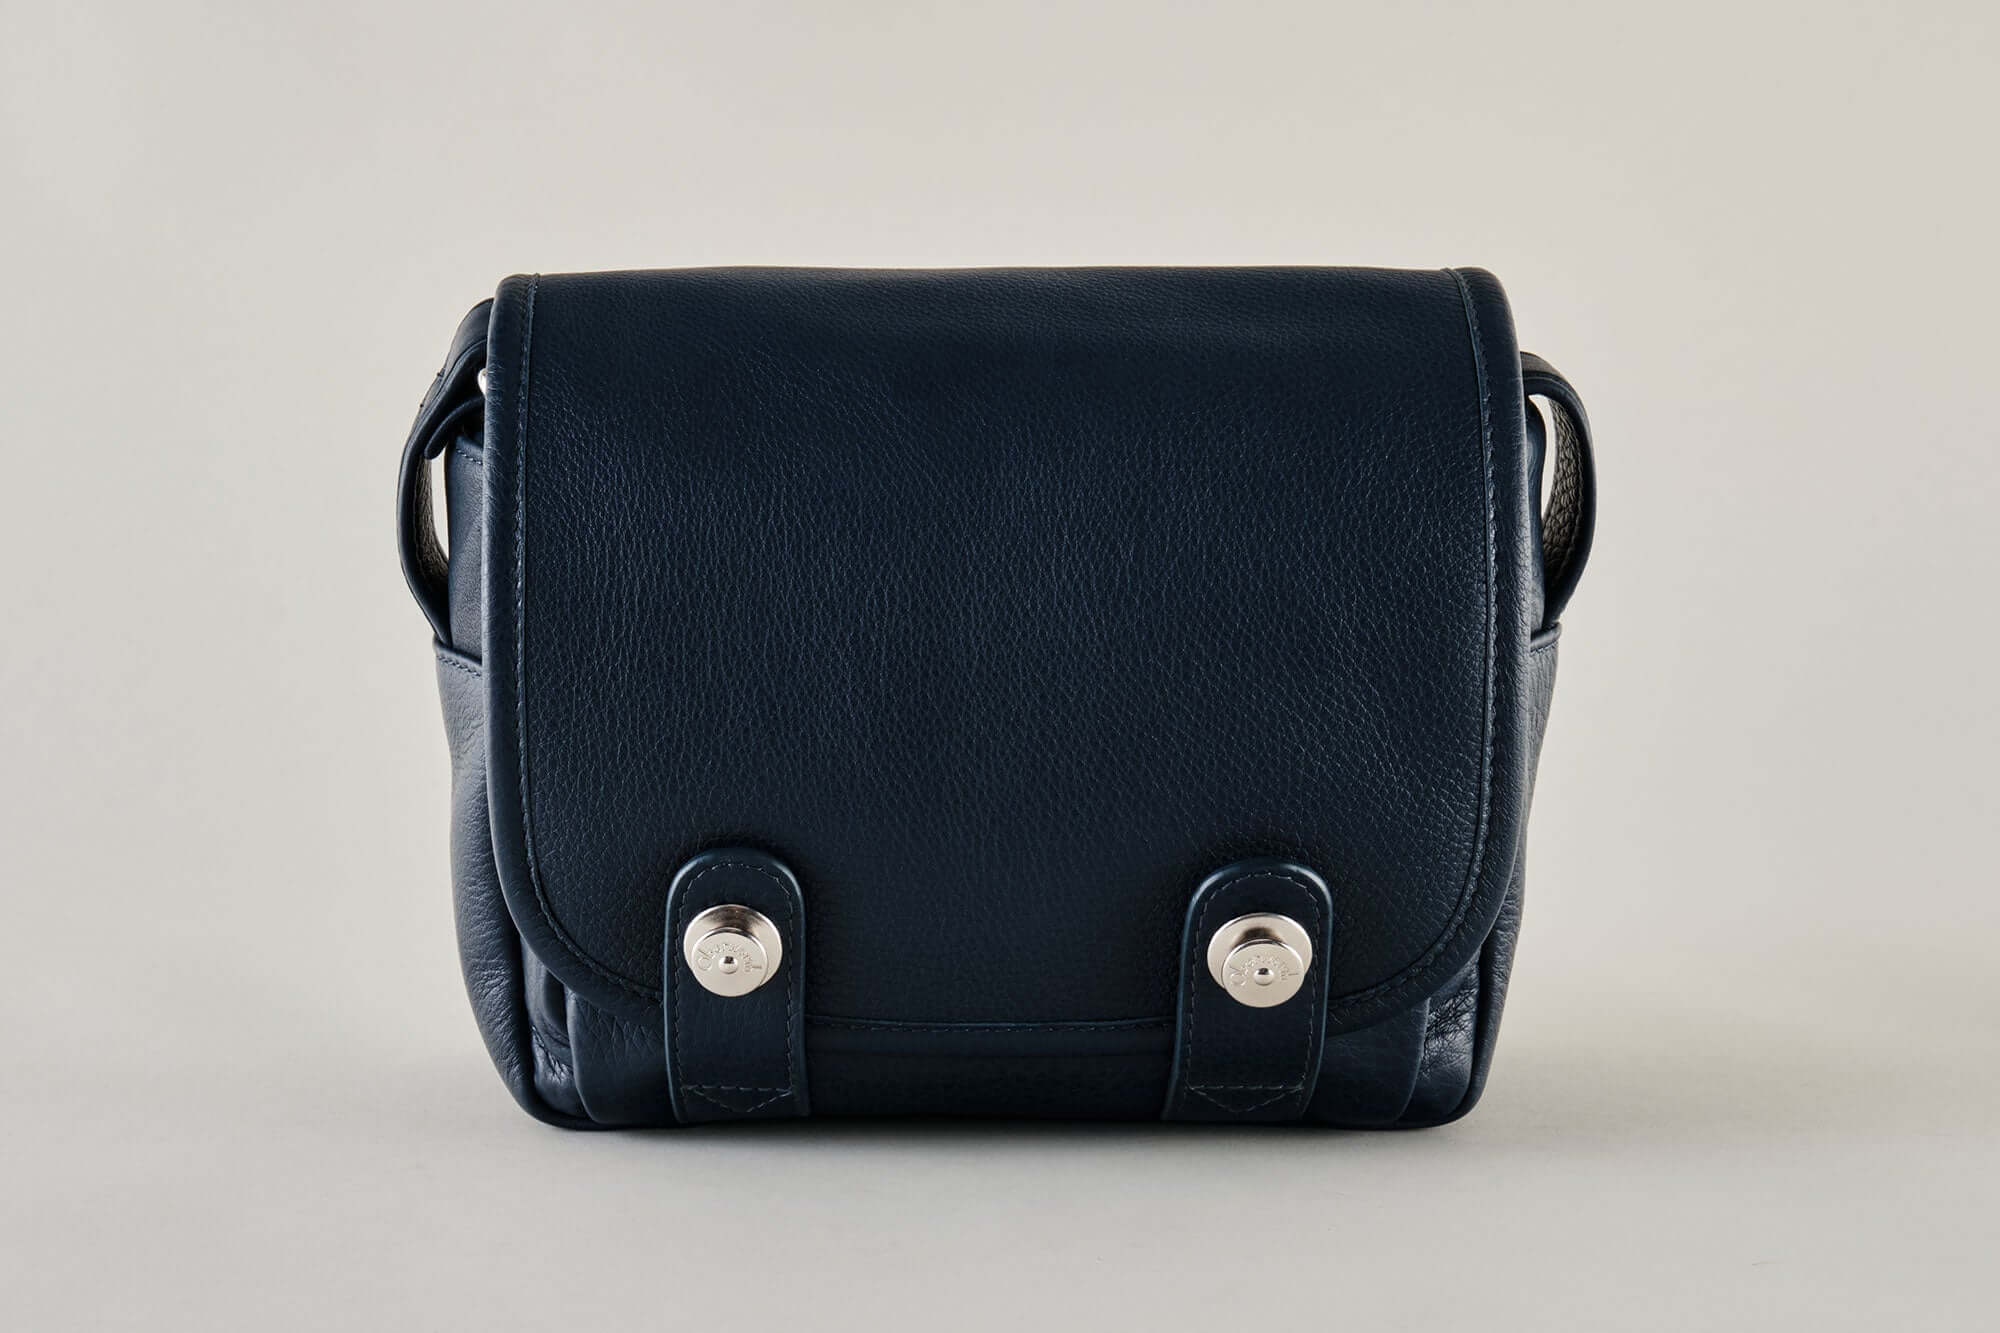 The Q Bag Casual (Phil) - Leica Q3 bag gentian !Trade Fair Goods!